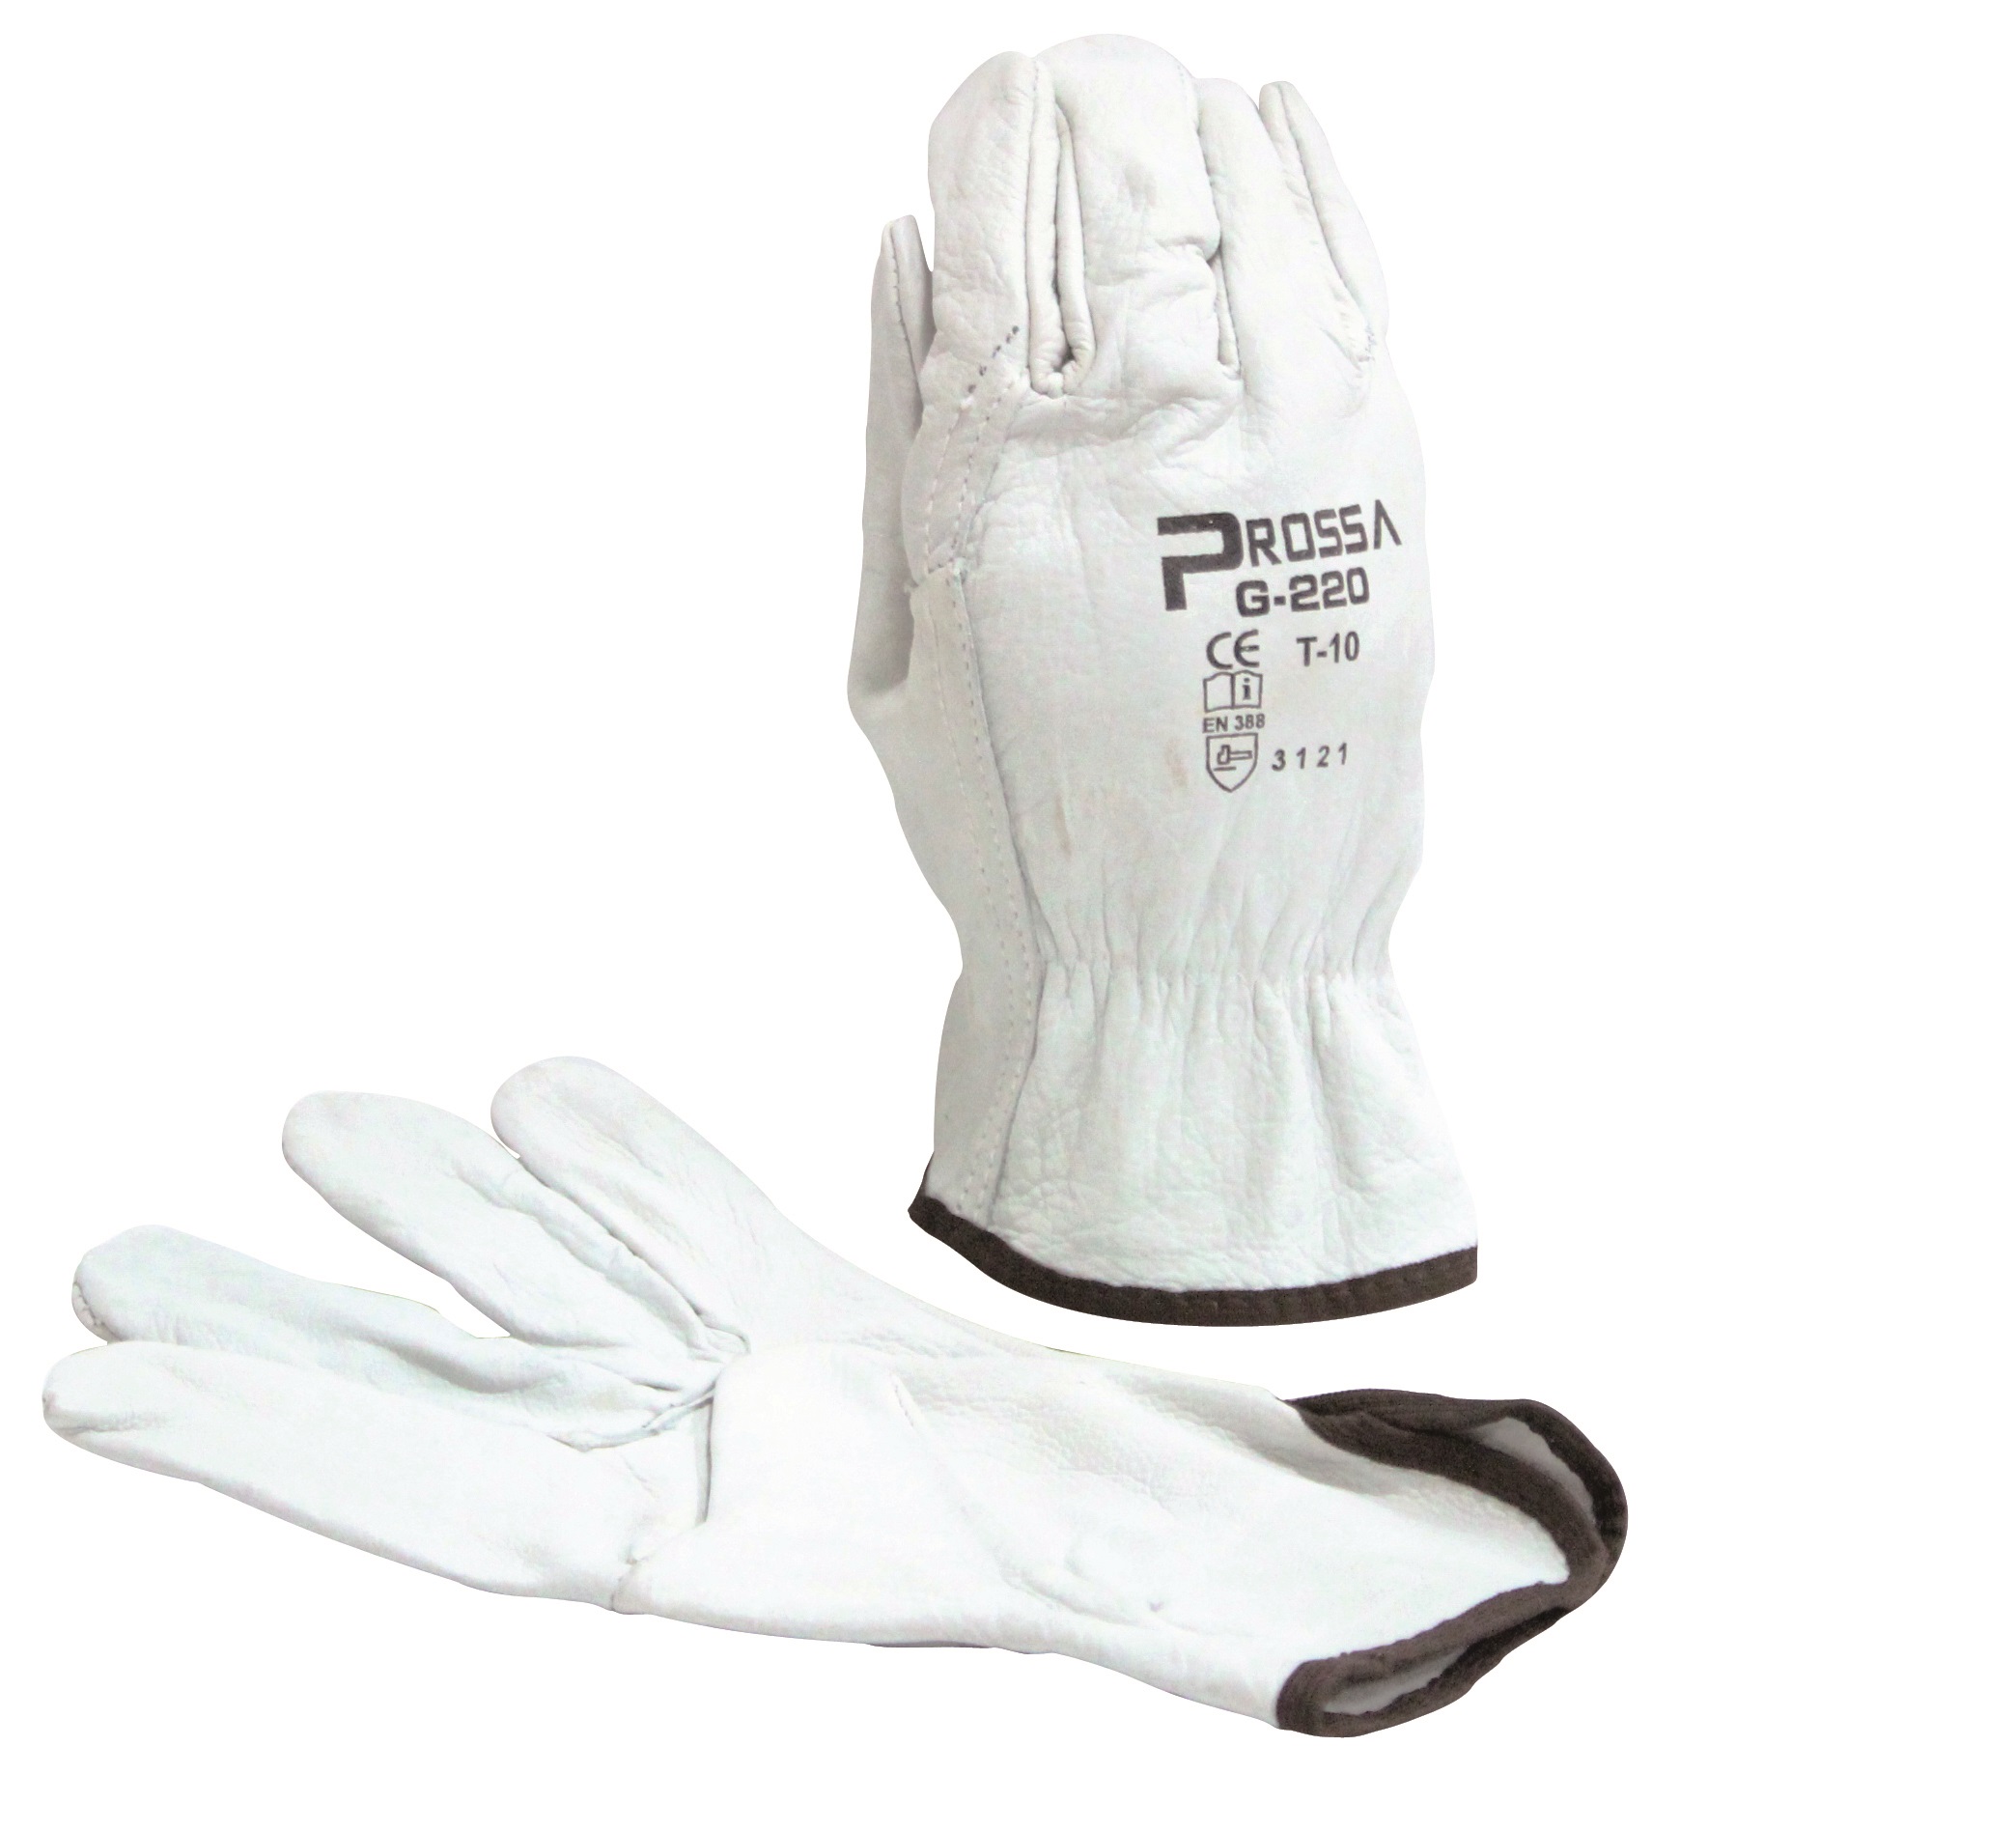 Les différents modèles de gants de protection - 4mepro